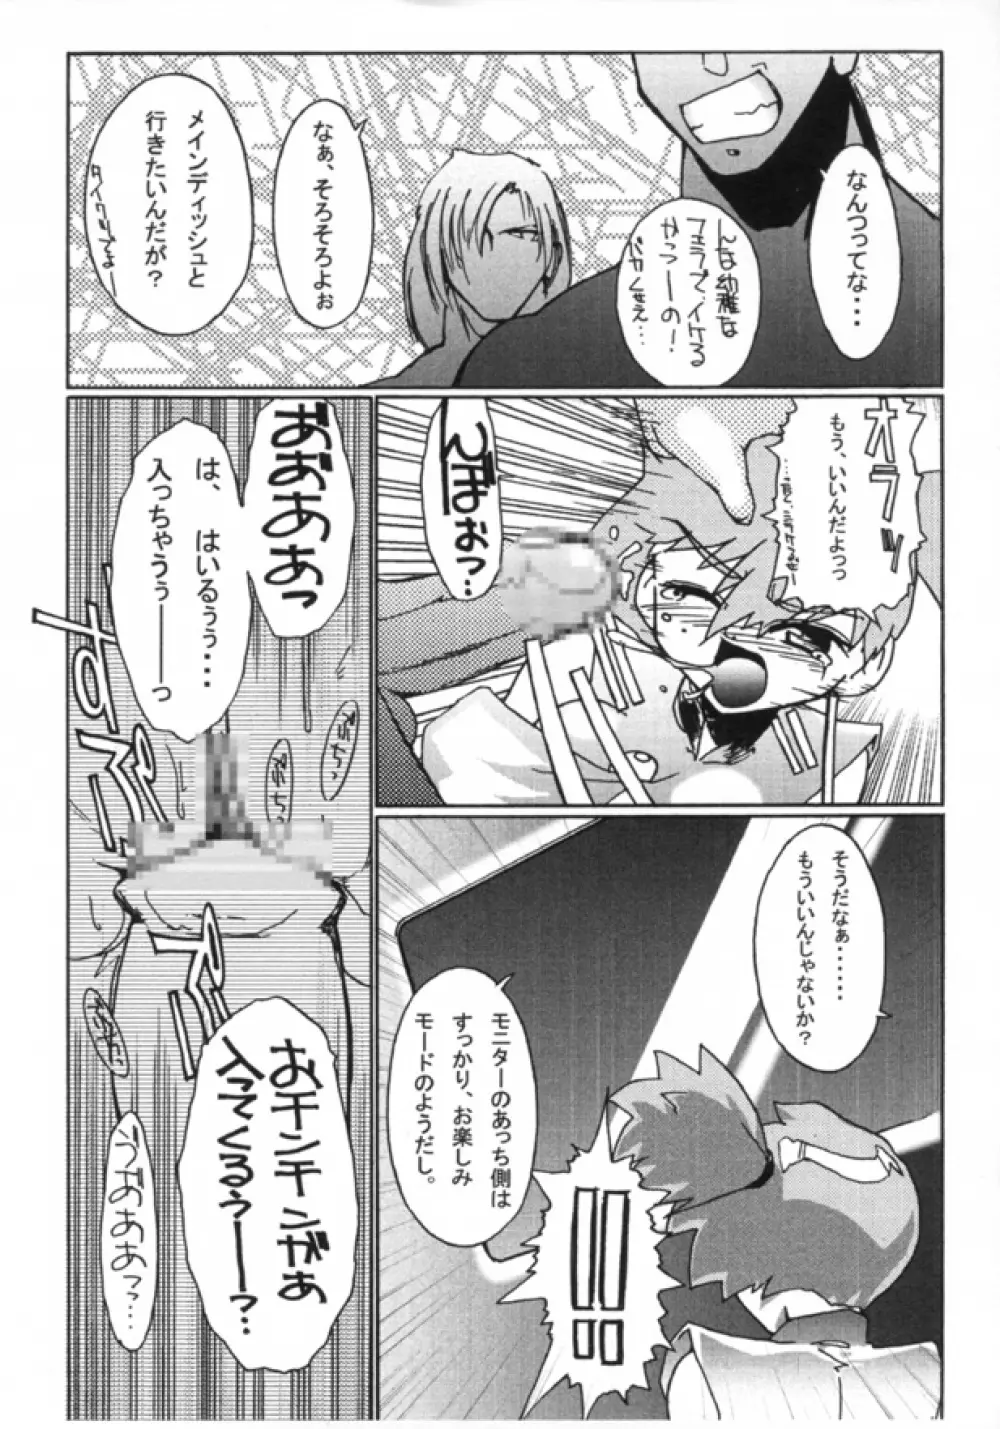 KASUMIX XPLOSION Kasumi Comic part5 46ページ